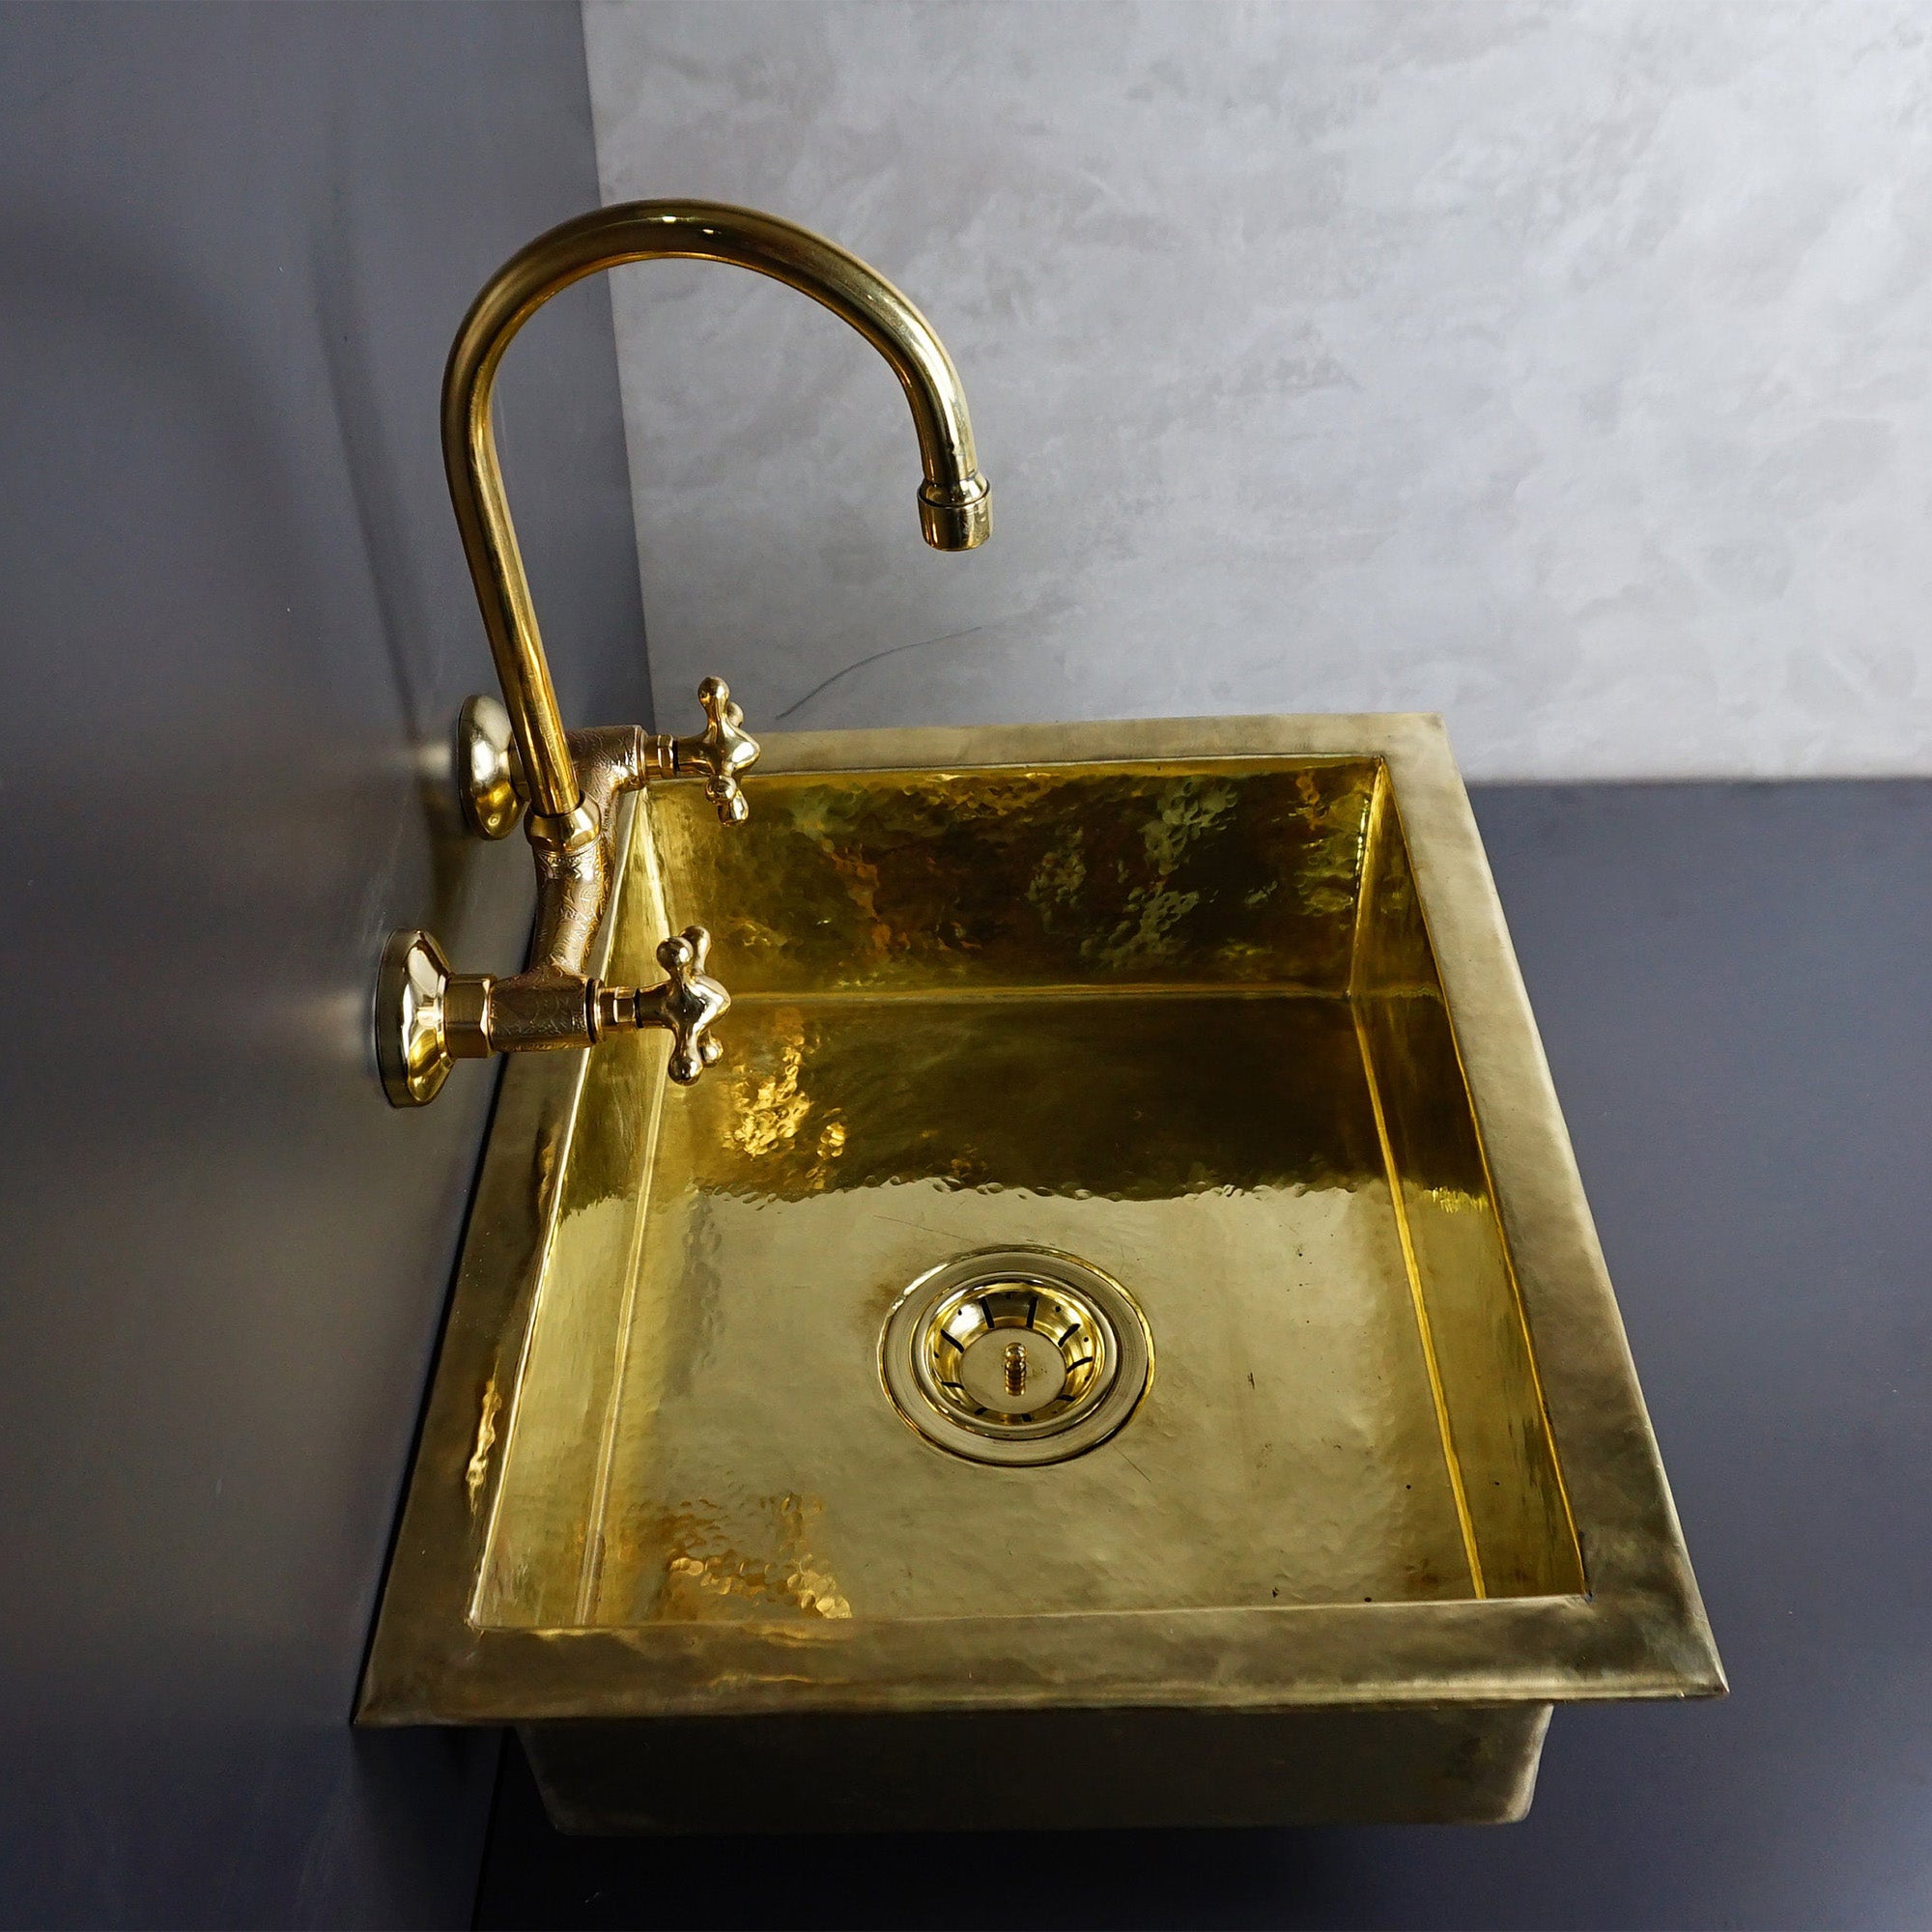 brass undermount kitchen sink